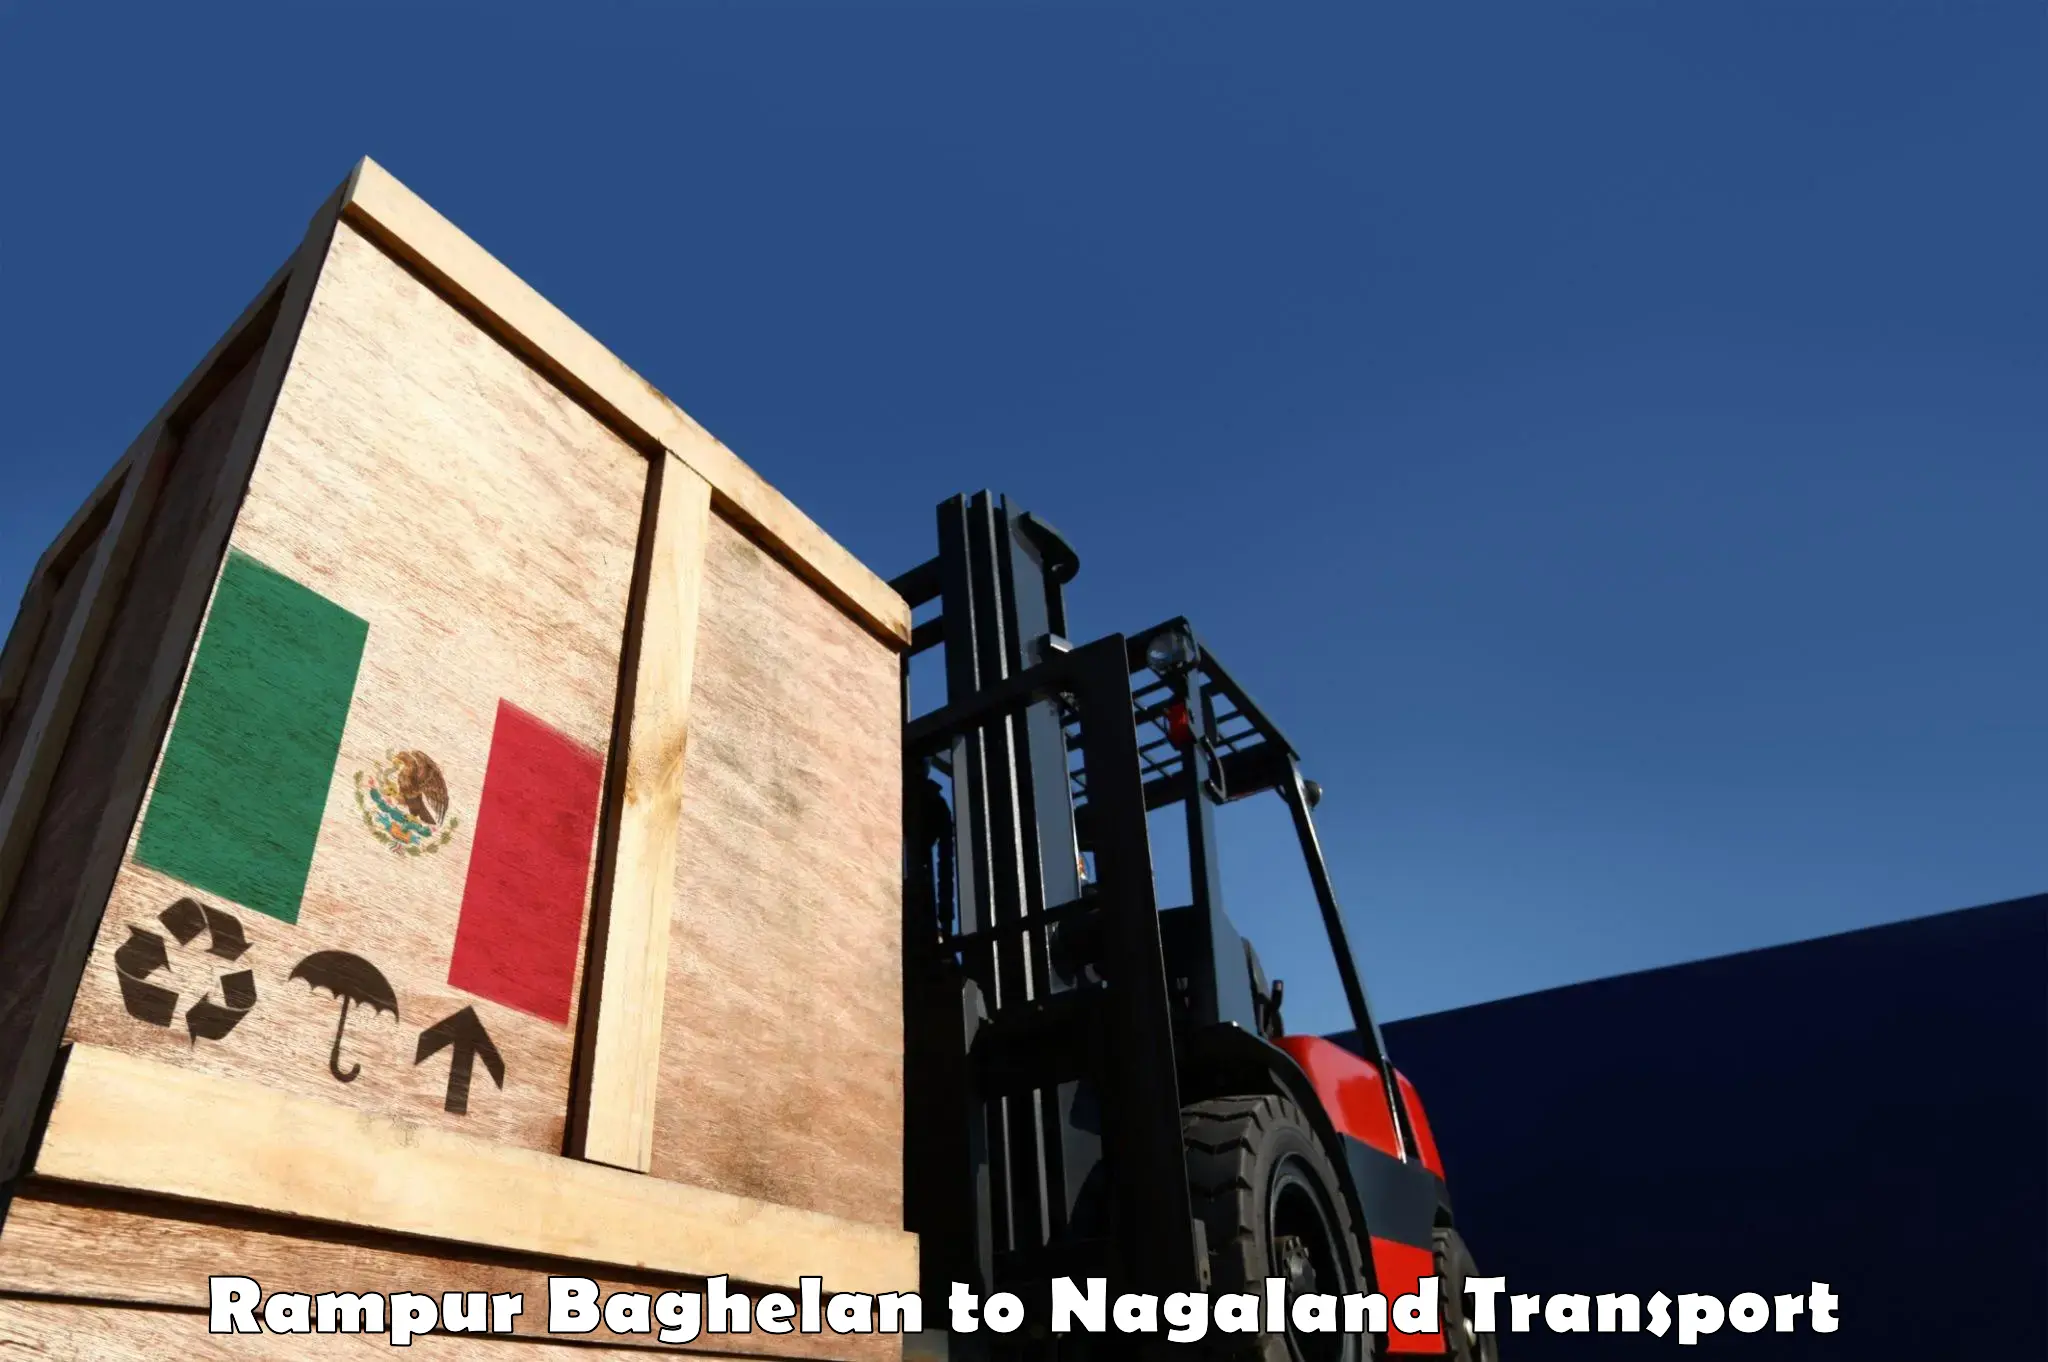 Furniture transport service Rampur Baghelan to NIT Nagaland